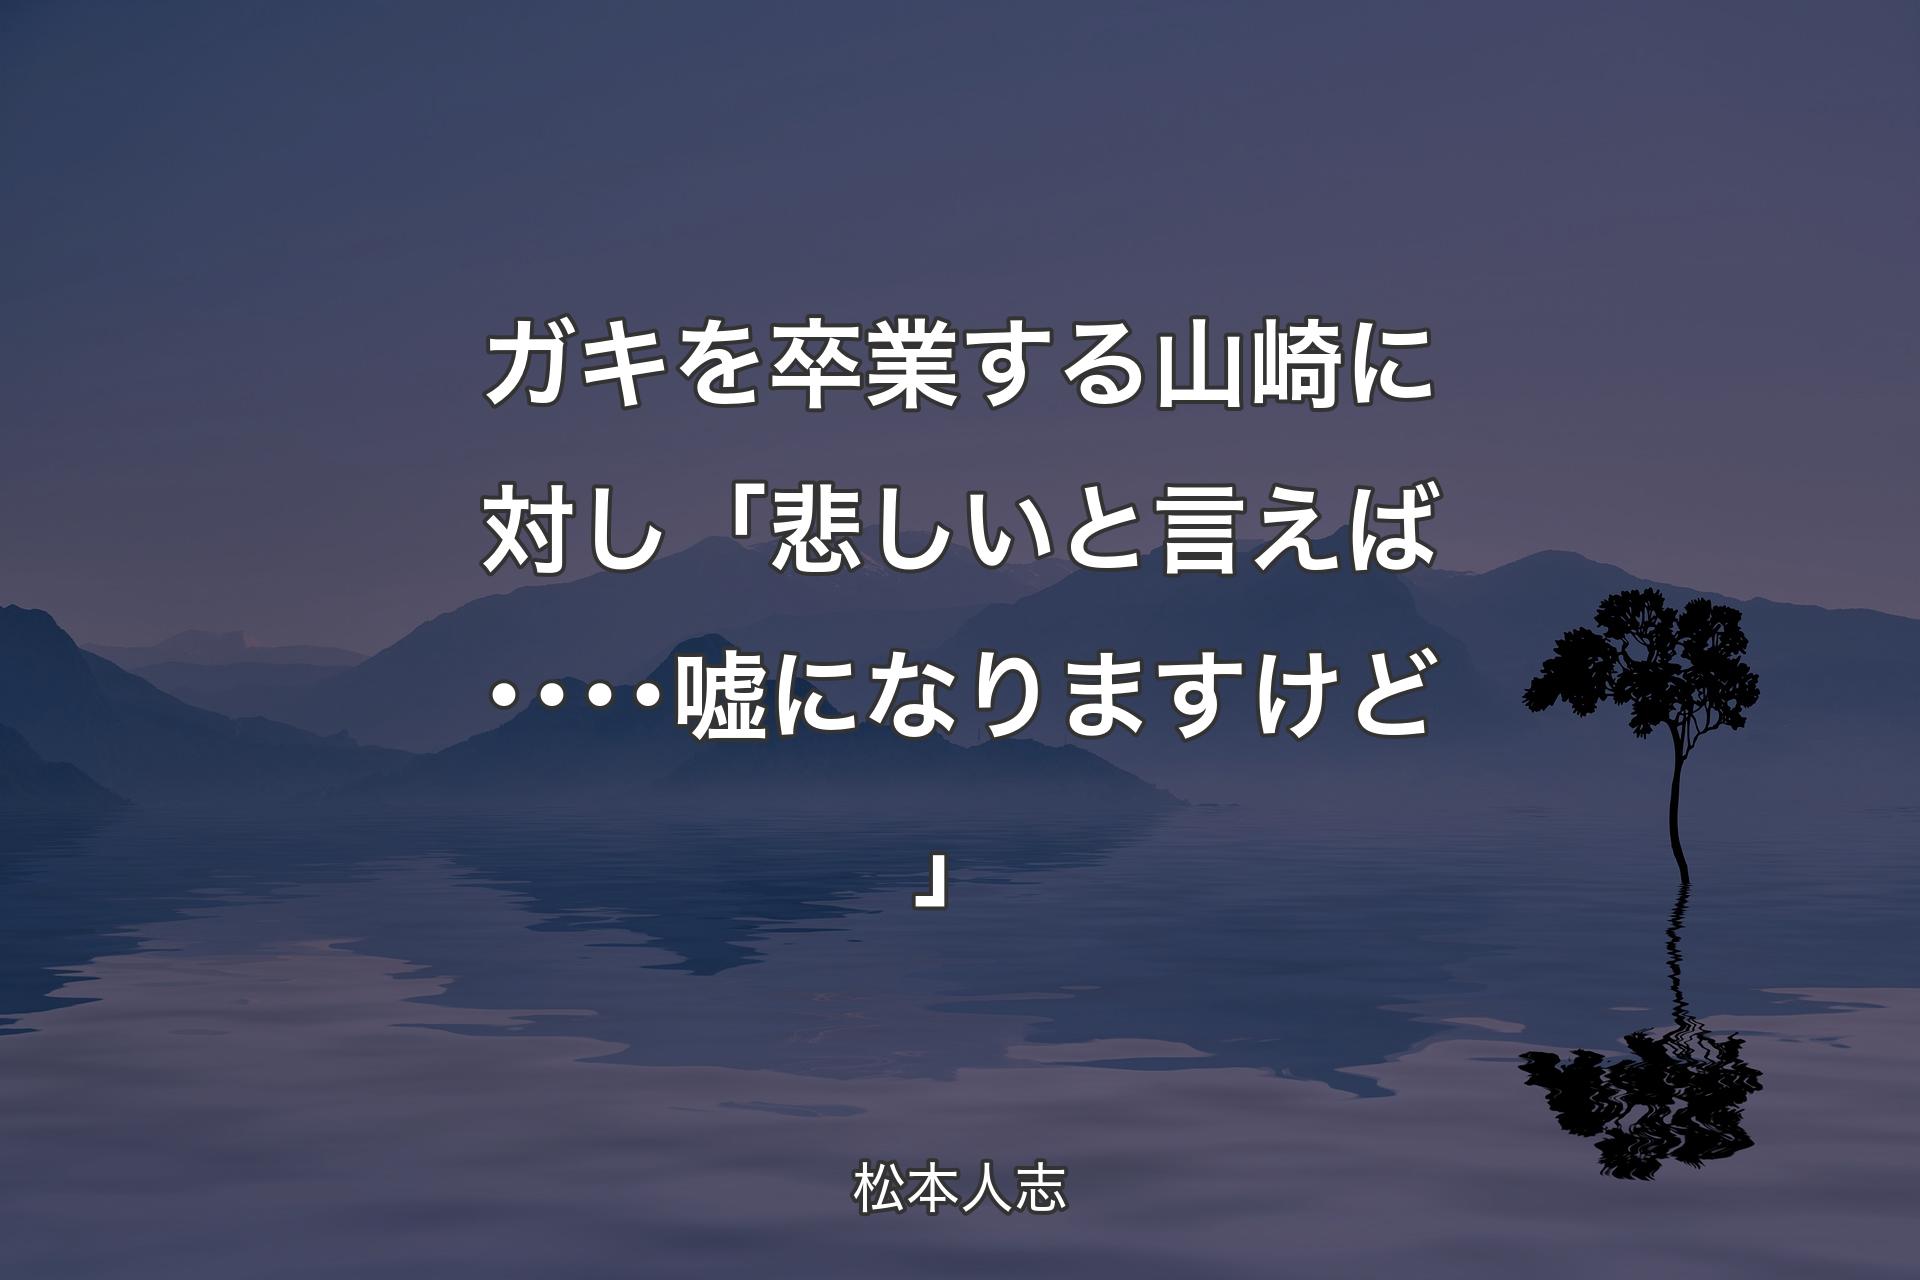 【背景4】ガキを卒業する山崎に対し 「悲しいと言えば････嘘になりますけど」 - 松本人志